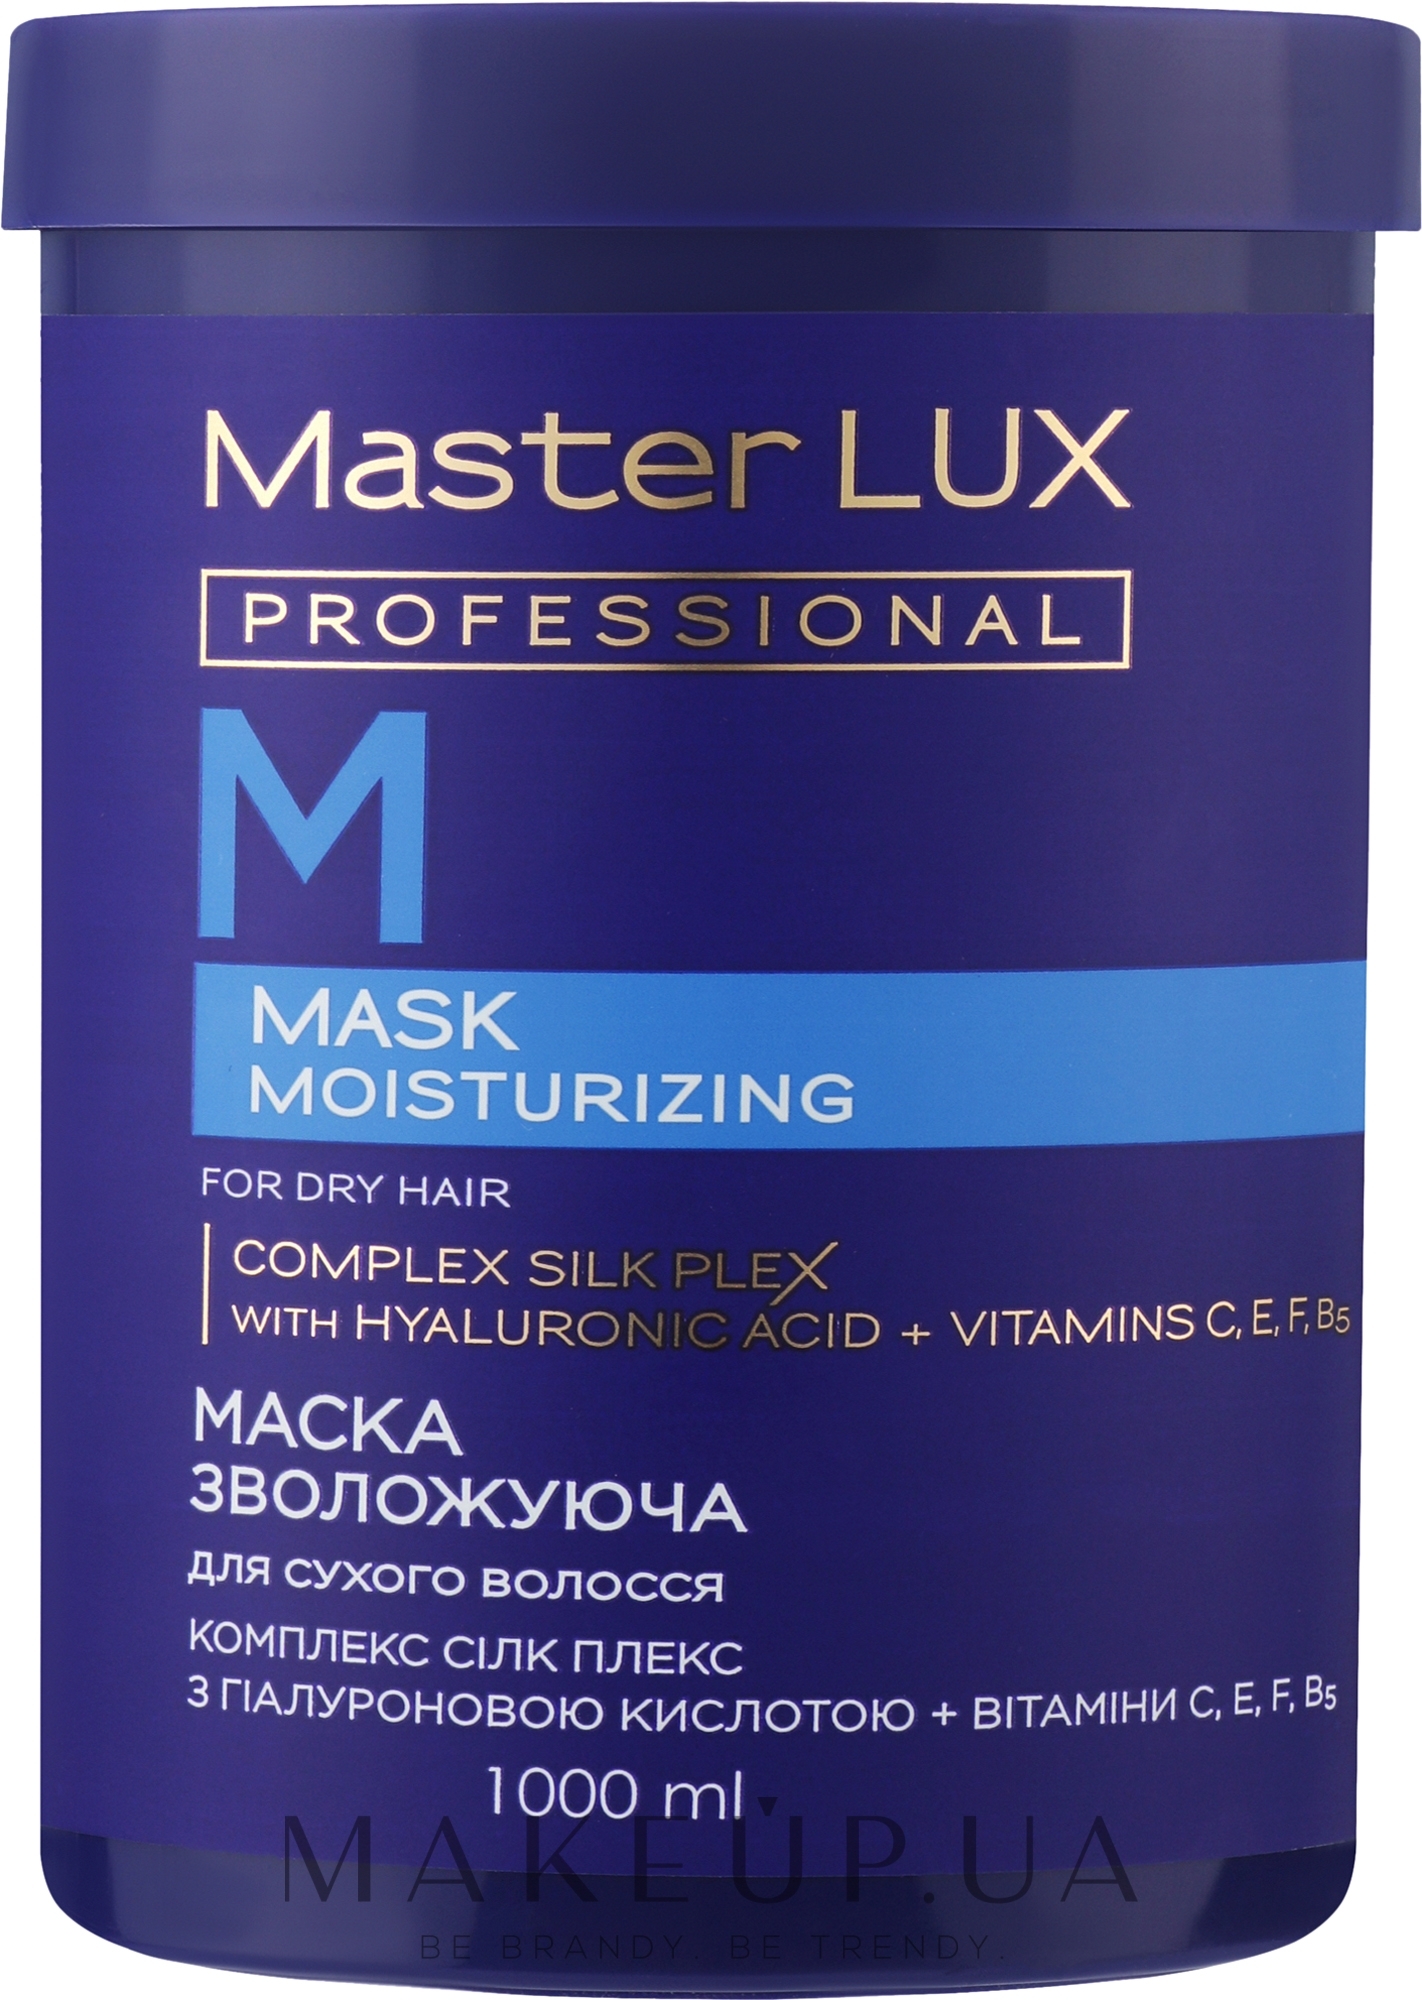 Маска для сухого волосся "Зволожувальна" - Master LUX Professional Moisturizing Mask — фото 1000ml